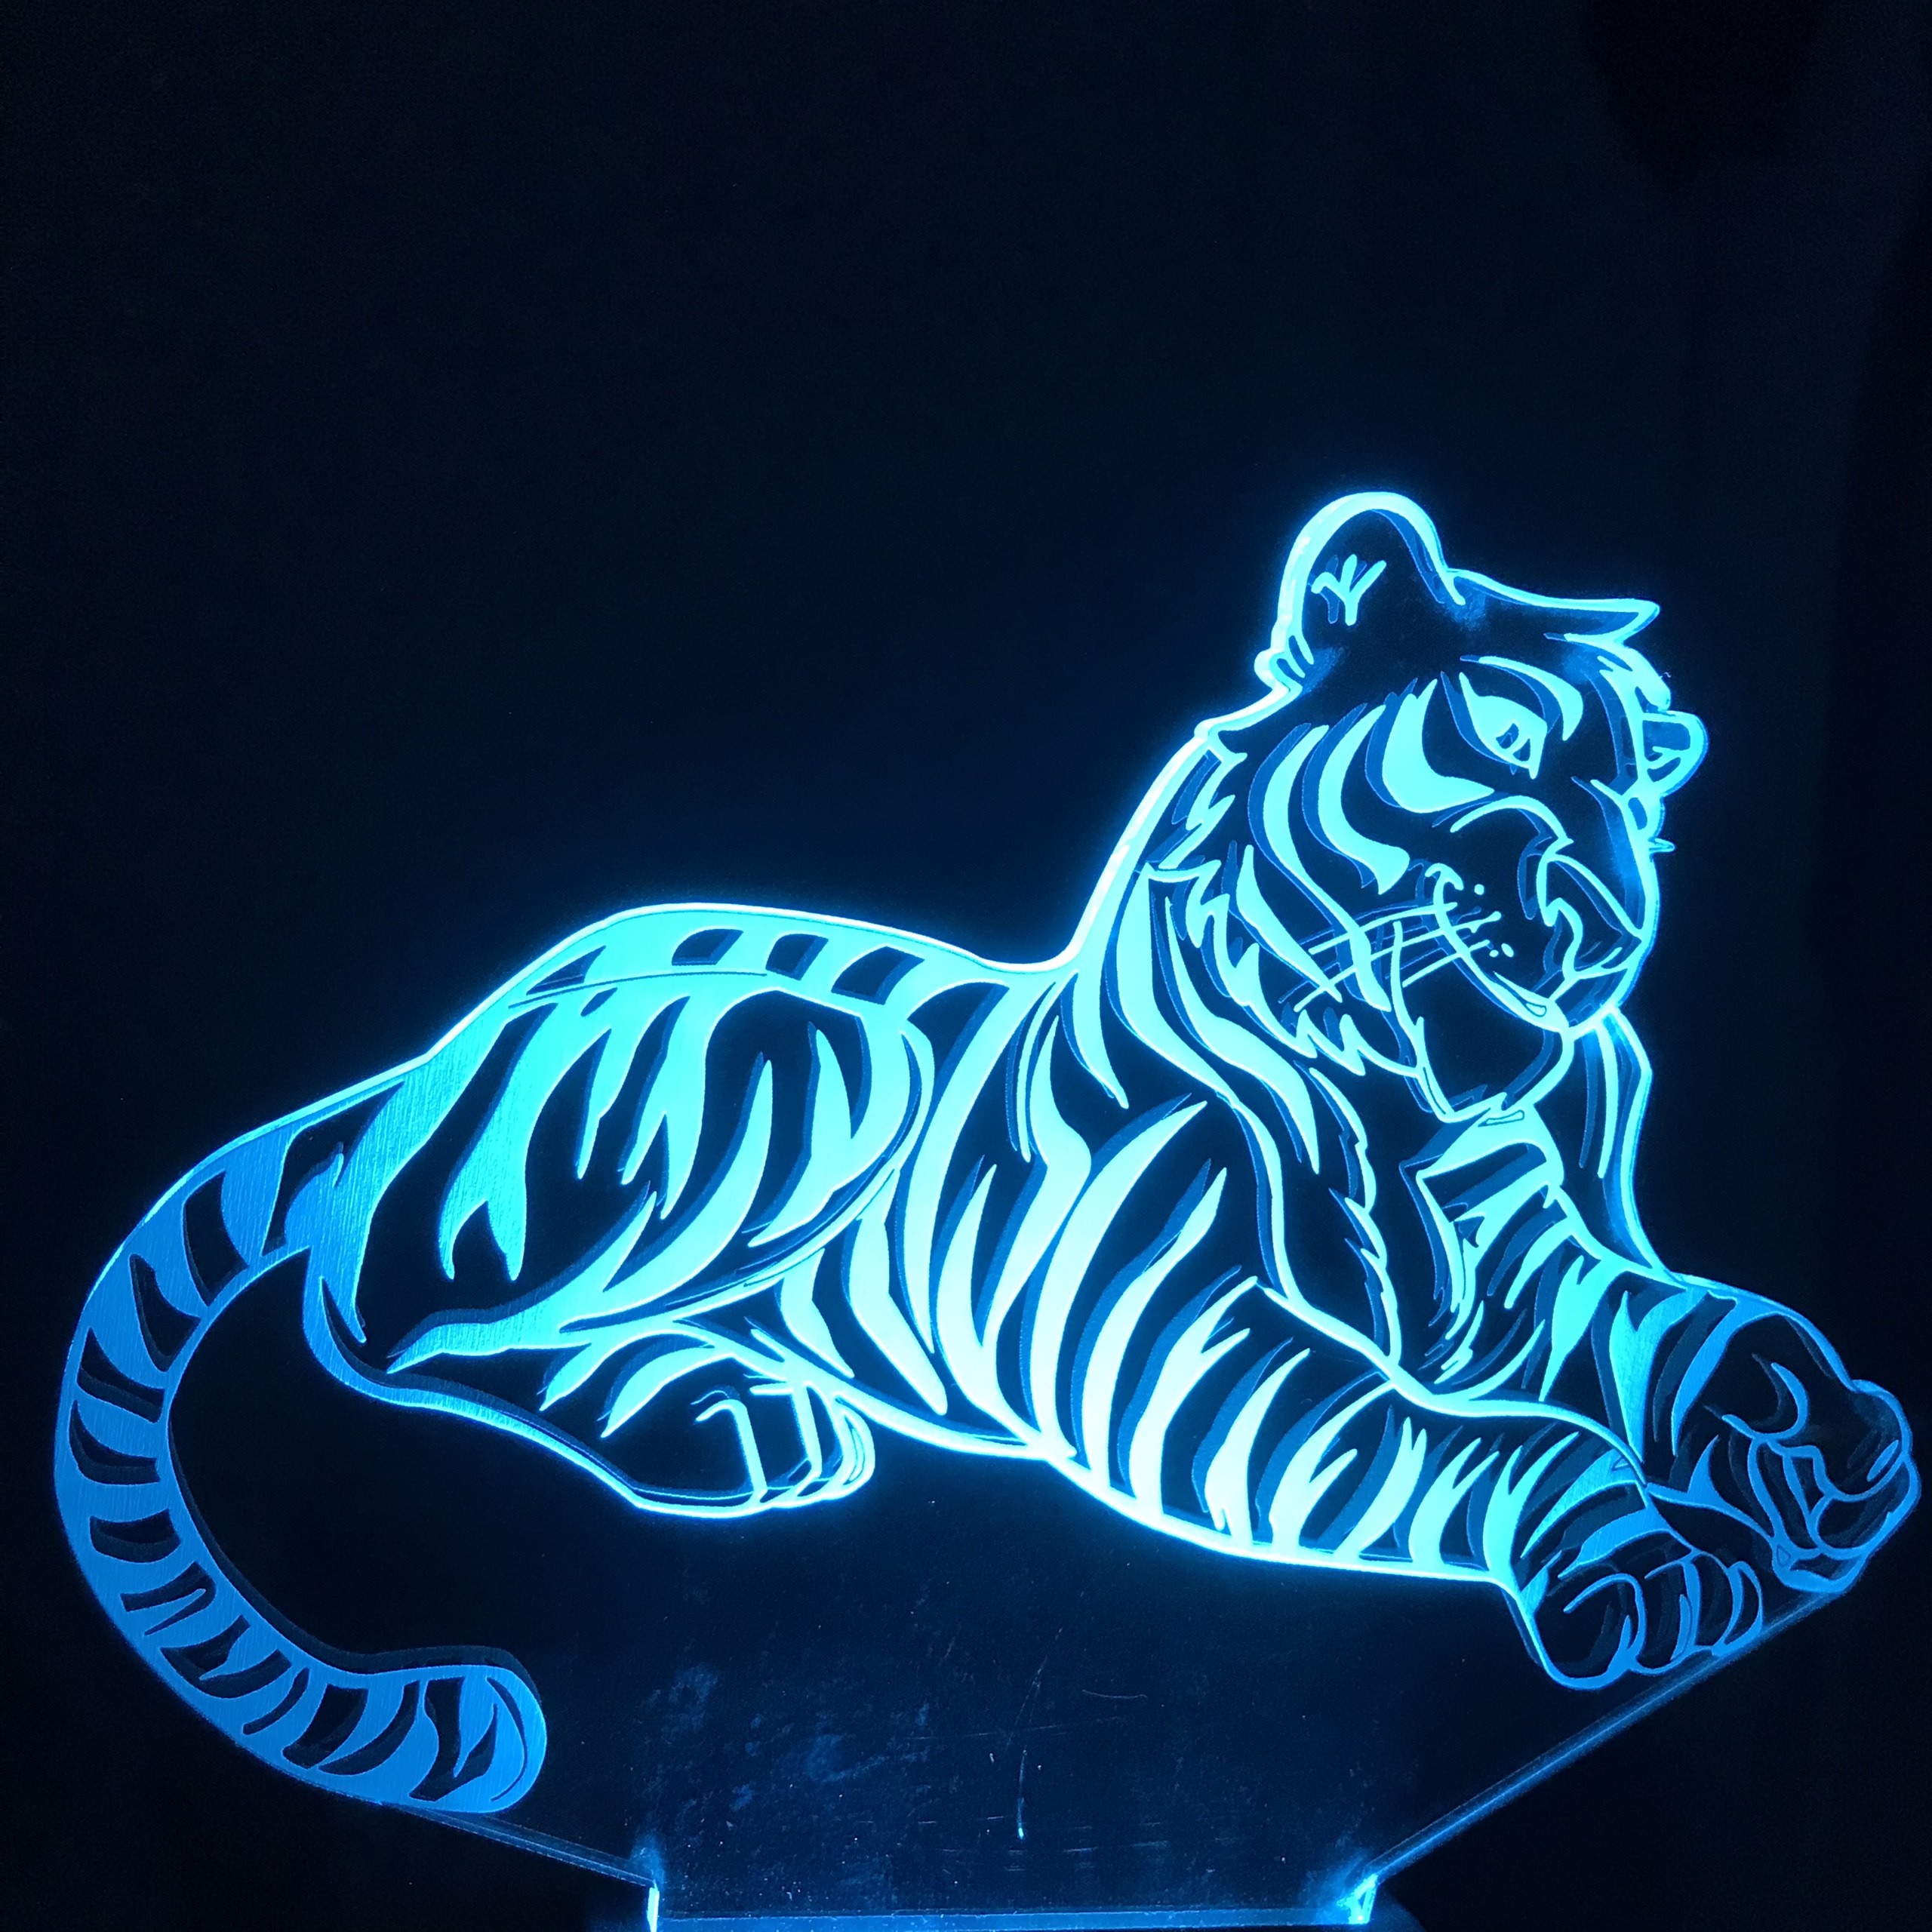 Đèn led con hổ 3D là món quà tuyệt vời để tưới sáng không gian sống của bạn. Với thiết kế hiện đại và song song đó, chúng đem lại vẻ đẹp mới lạ cho ngôi nhà của bạn. Hãy để con hổ chiếu sáng đường đi của bạn tạo nên sức hút cho ngôi nhà của bạn.